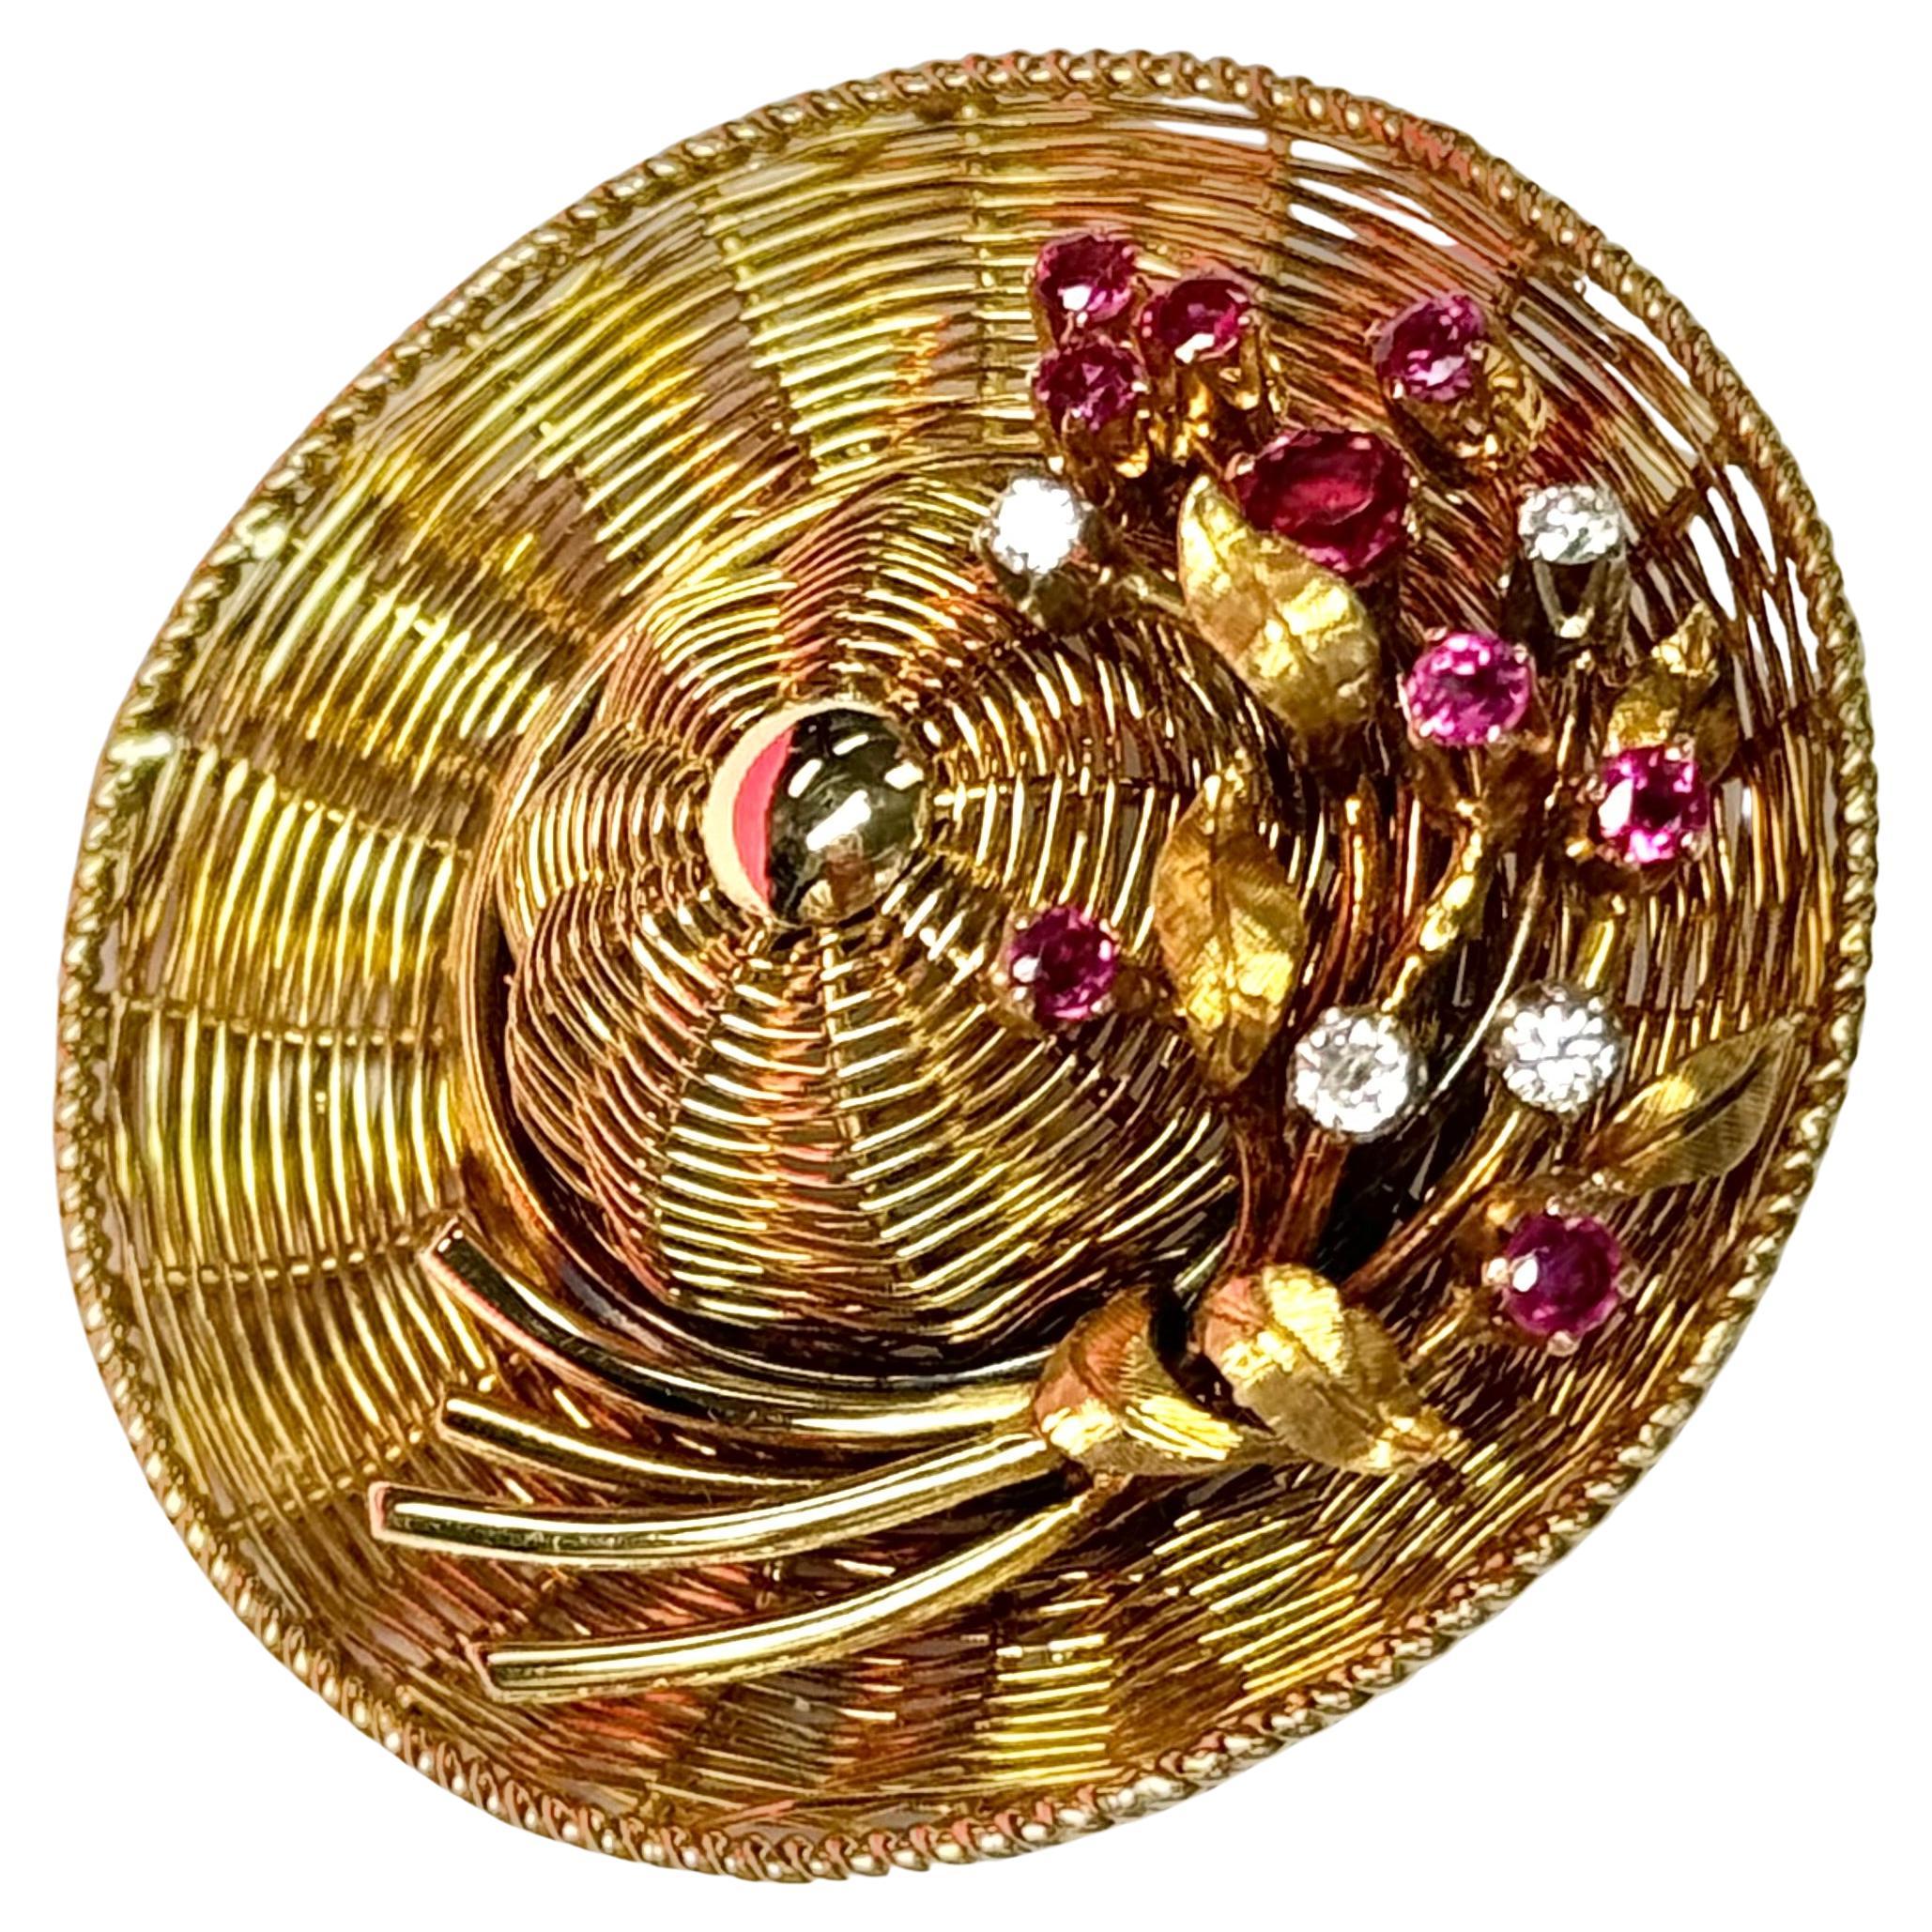 Rare broche ancienne de Tiffany & Co. en or jaune 18 carats avec des accents de diamants et de rubis. Ce chapeau exquis et fantaisiste est réalisé de main de maître dans une riche trame dorée et délicatement orné de fleurs en diamant et en rubis,